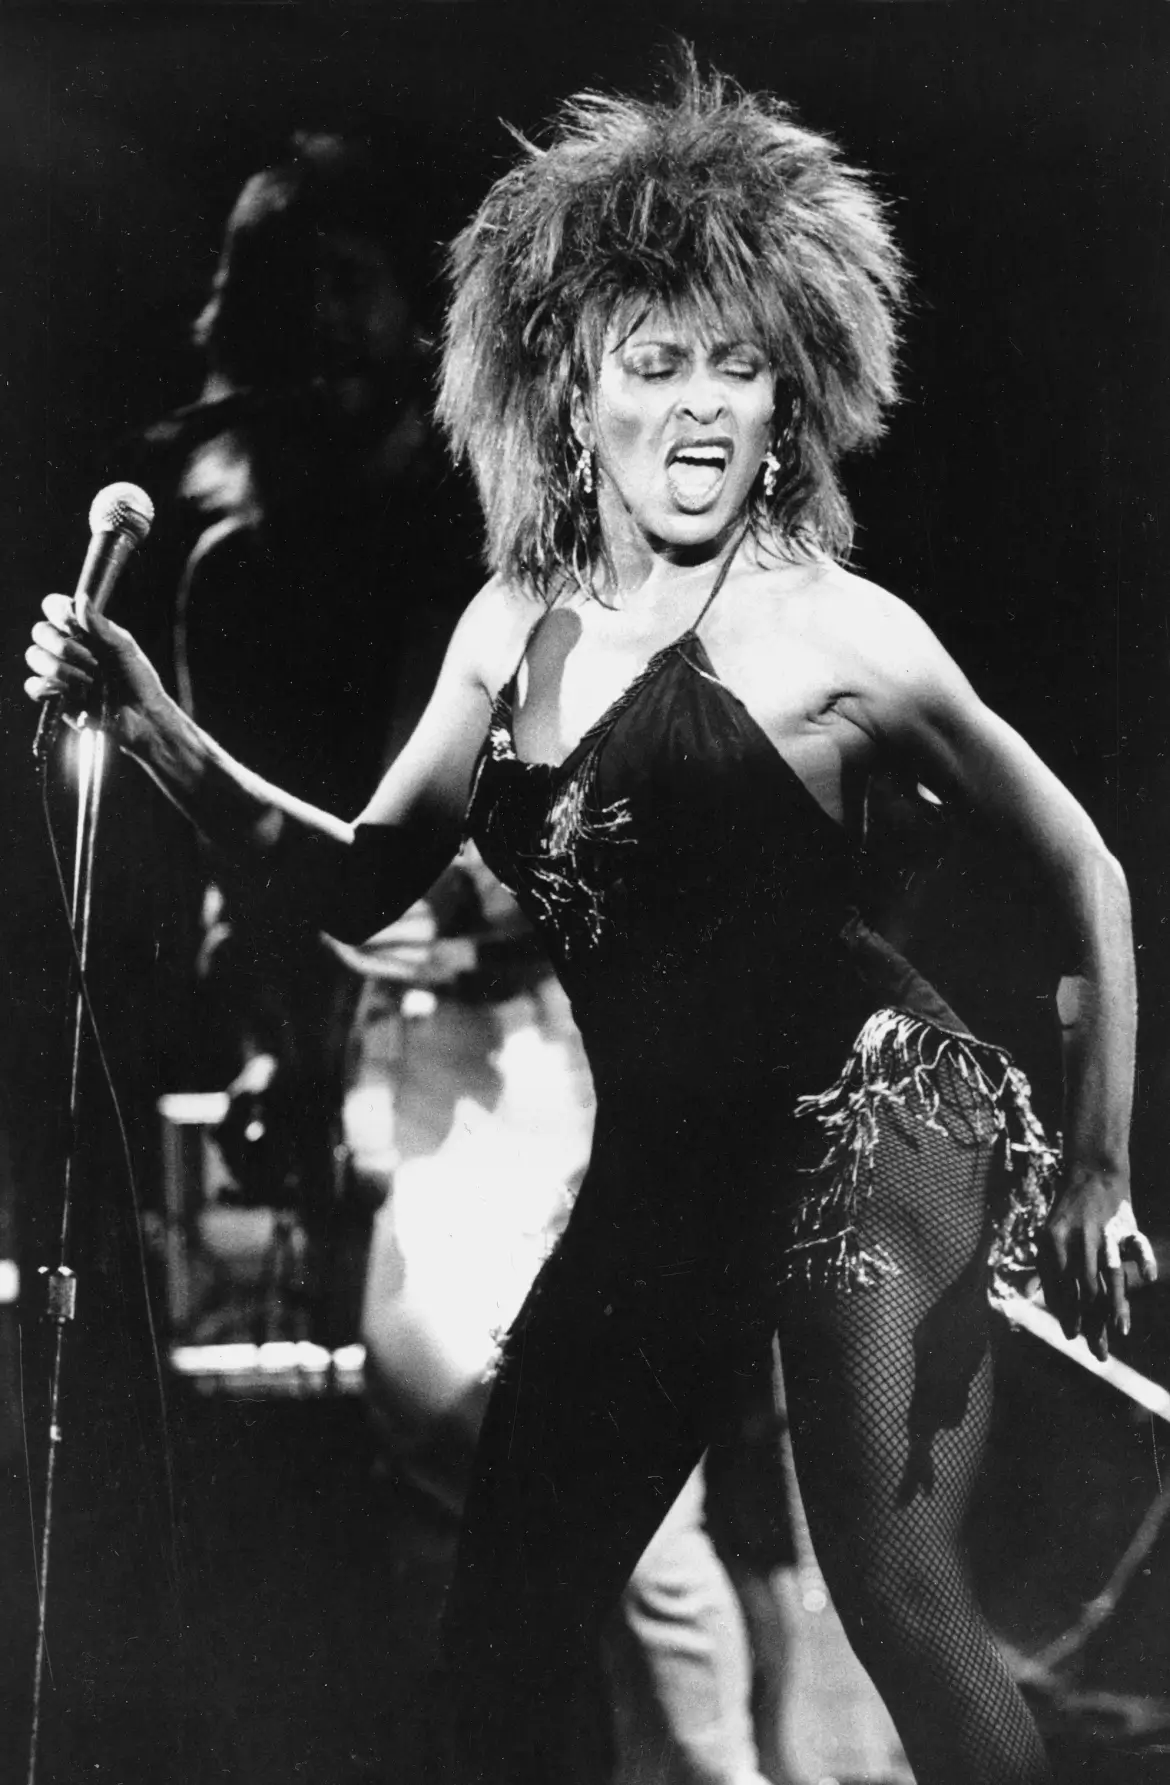 Fotos desconhecidas de Tina Turner